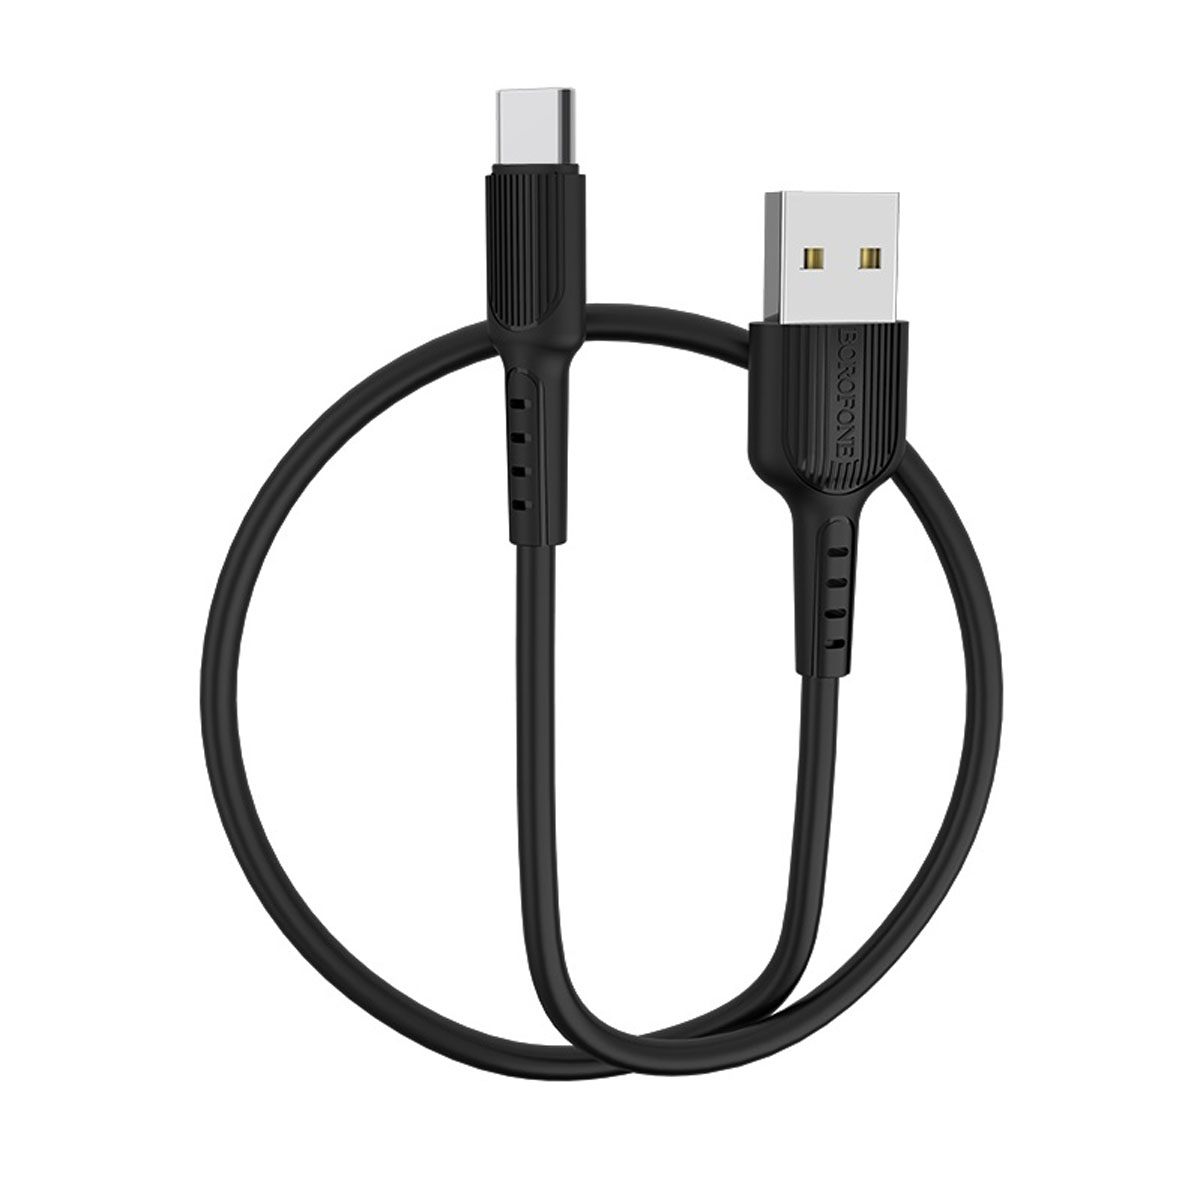 Кабель BOROFONE BX16 Easy USB Type C, длина 1 метр, 2A, силикон, цвет черный